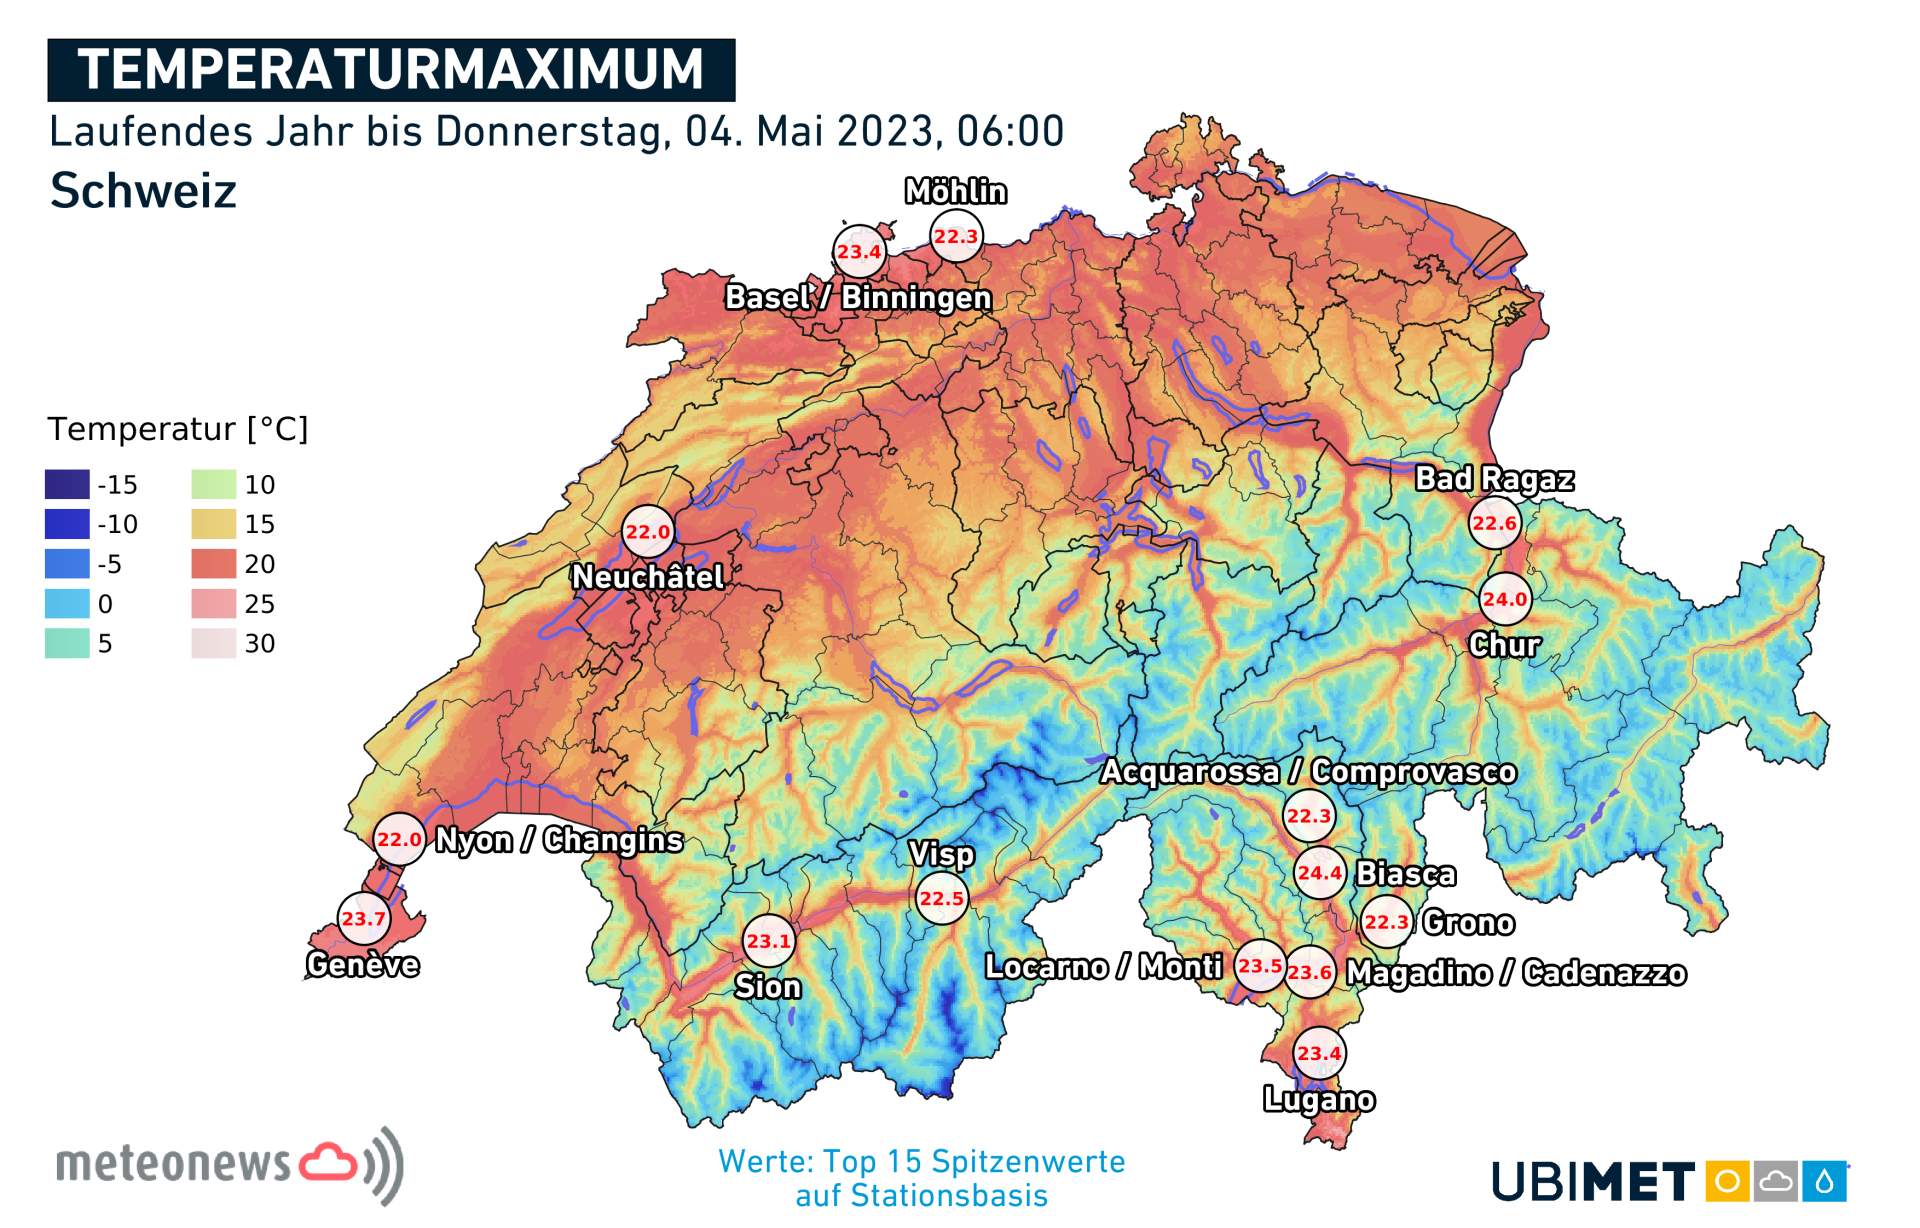 Températures maximales mesurées en 2023 en Suisse; Source: MeteoNews